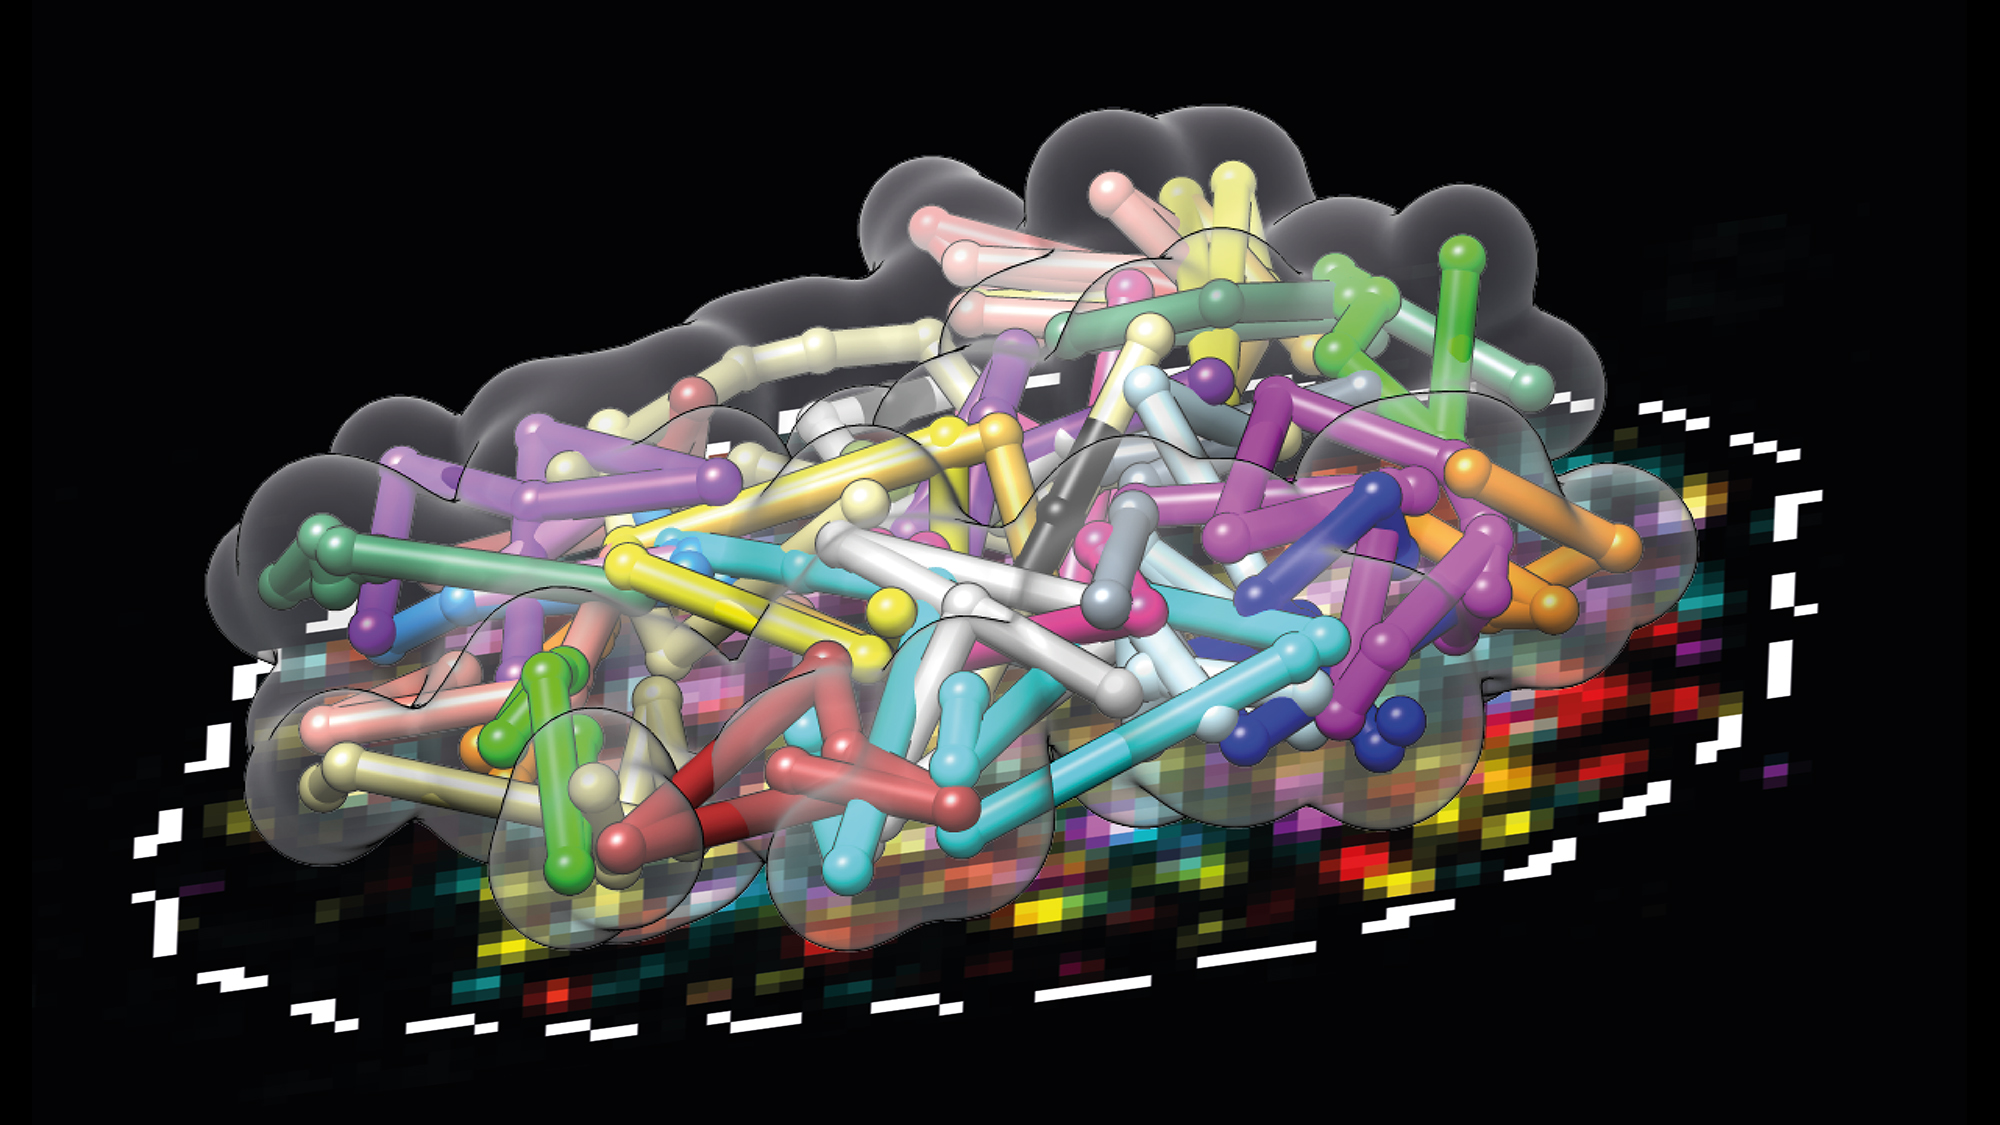 El nou centre de visualització del genoma té com a objectiu observar el genoma humà complet en 3D. Aquesta reconstrucció es va fer amb OligoFISSEQ, un mètode creat pel grup d'en Marc Martí-Renom al CNAG-CRG